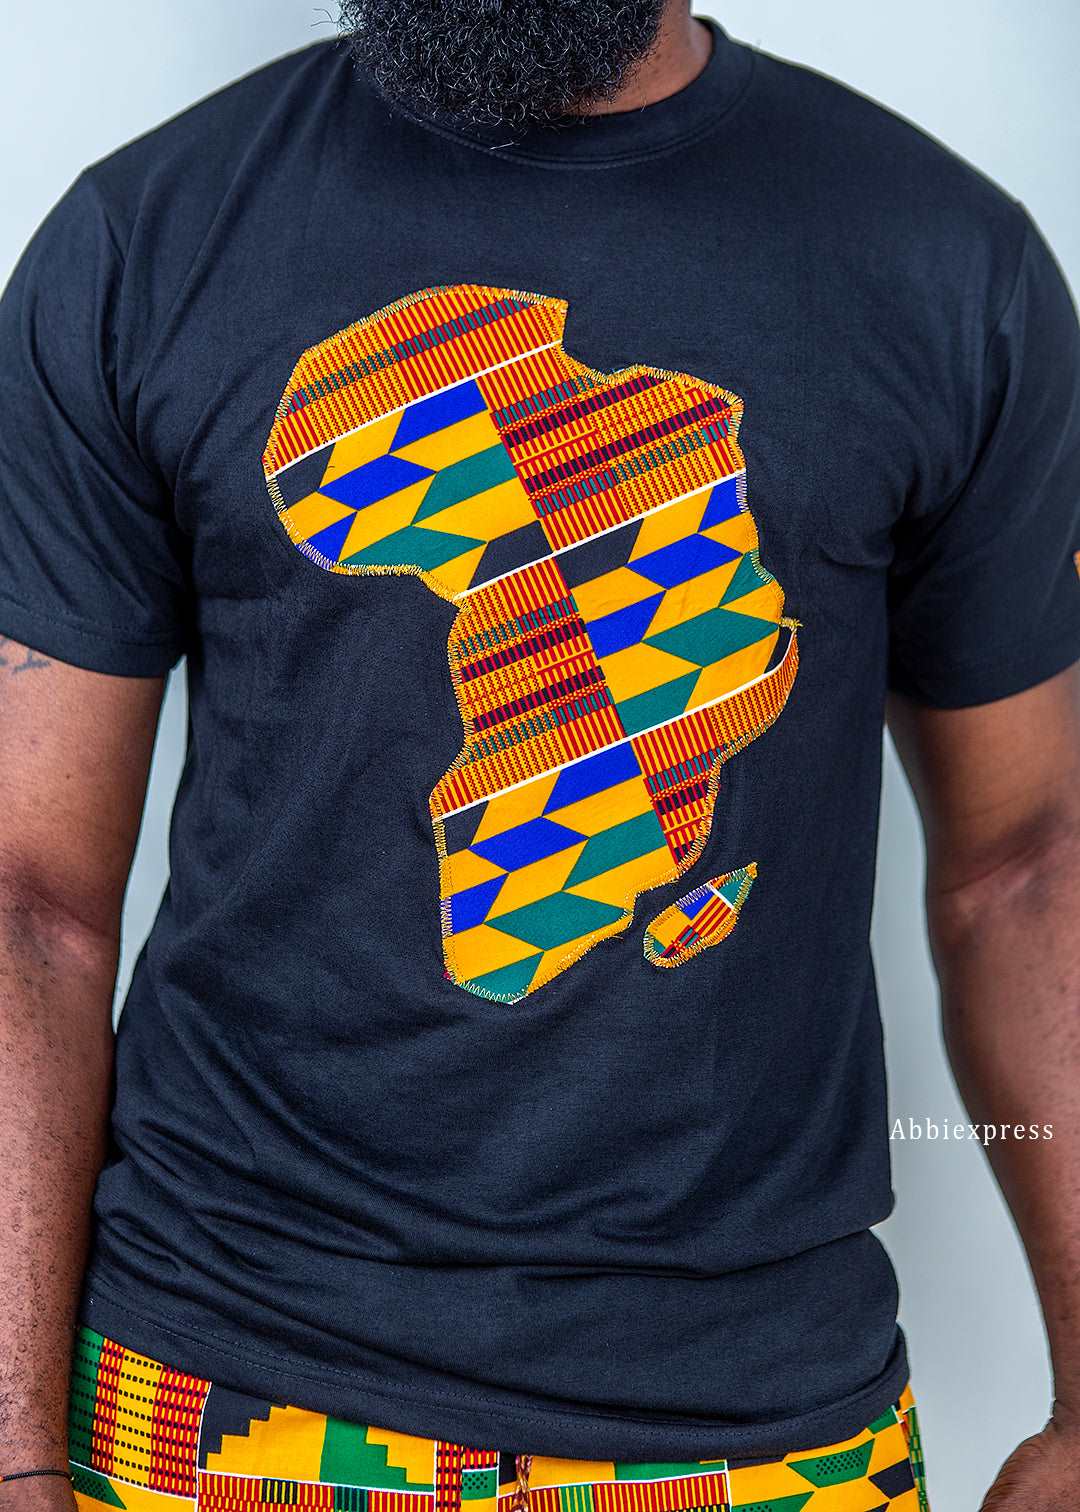 Abbiexpress Kente African map t-shirt